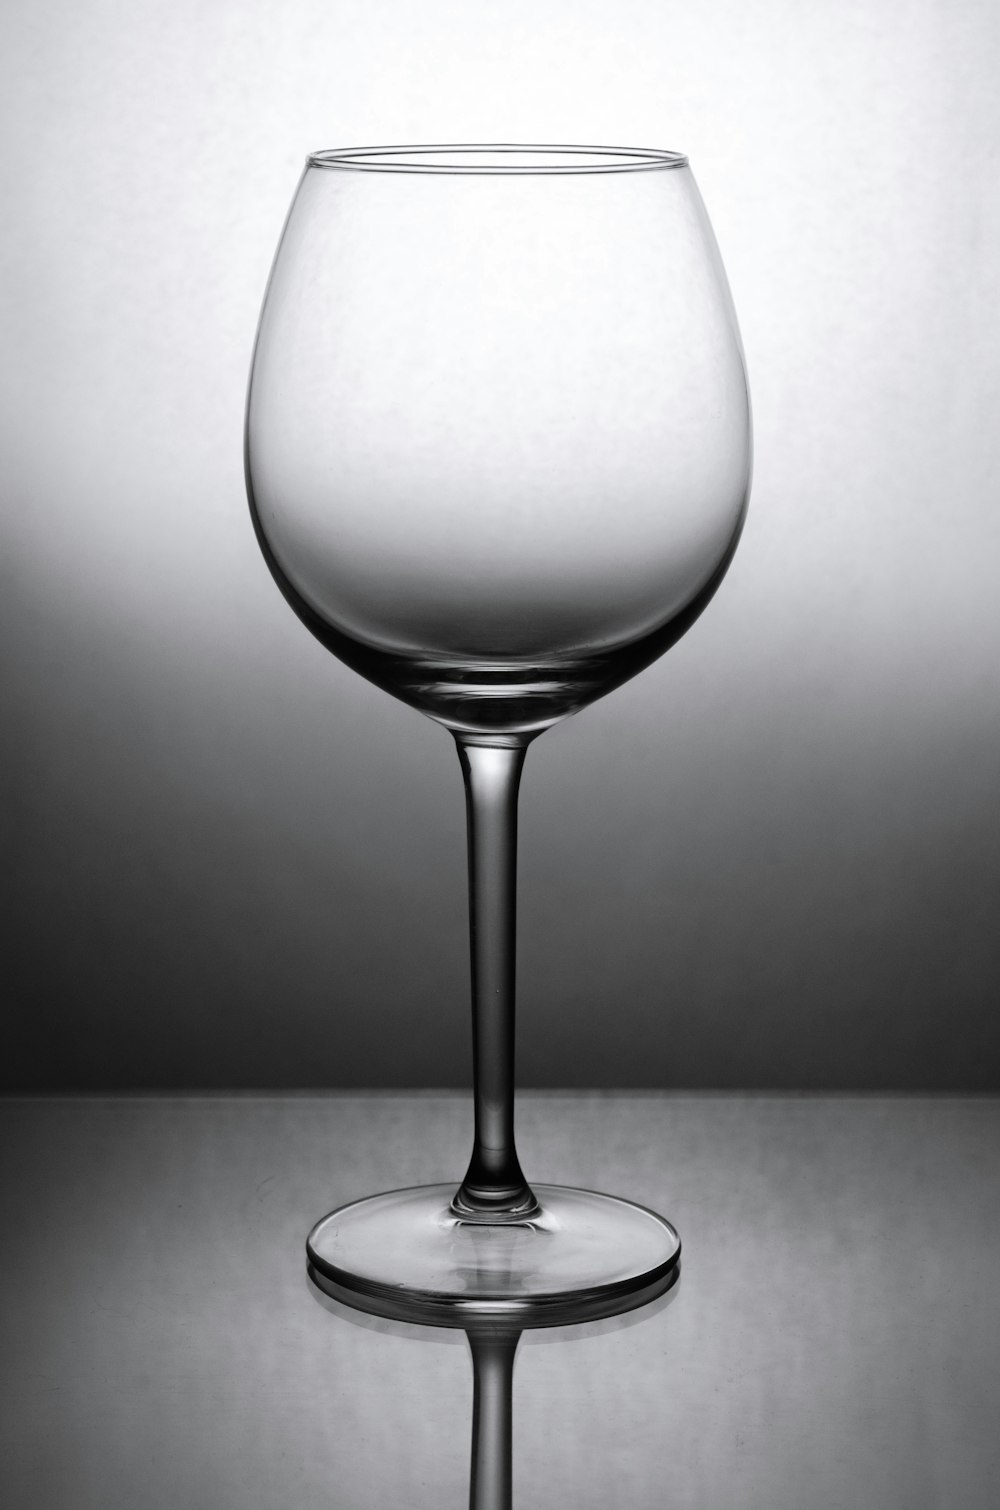 Photo en niveaux de gris d’un verre à vin